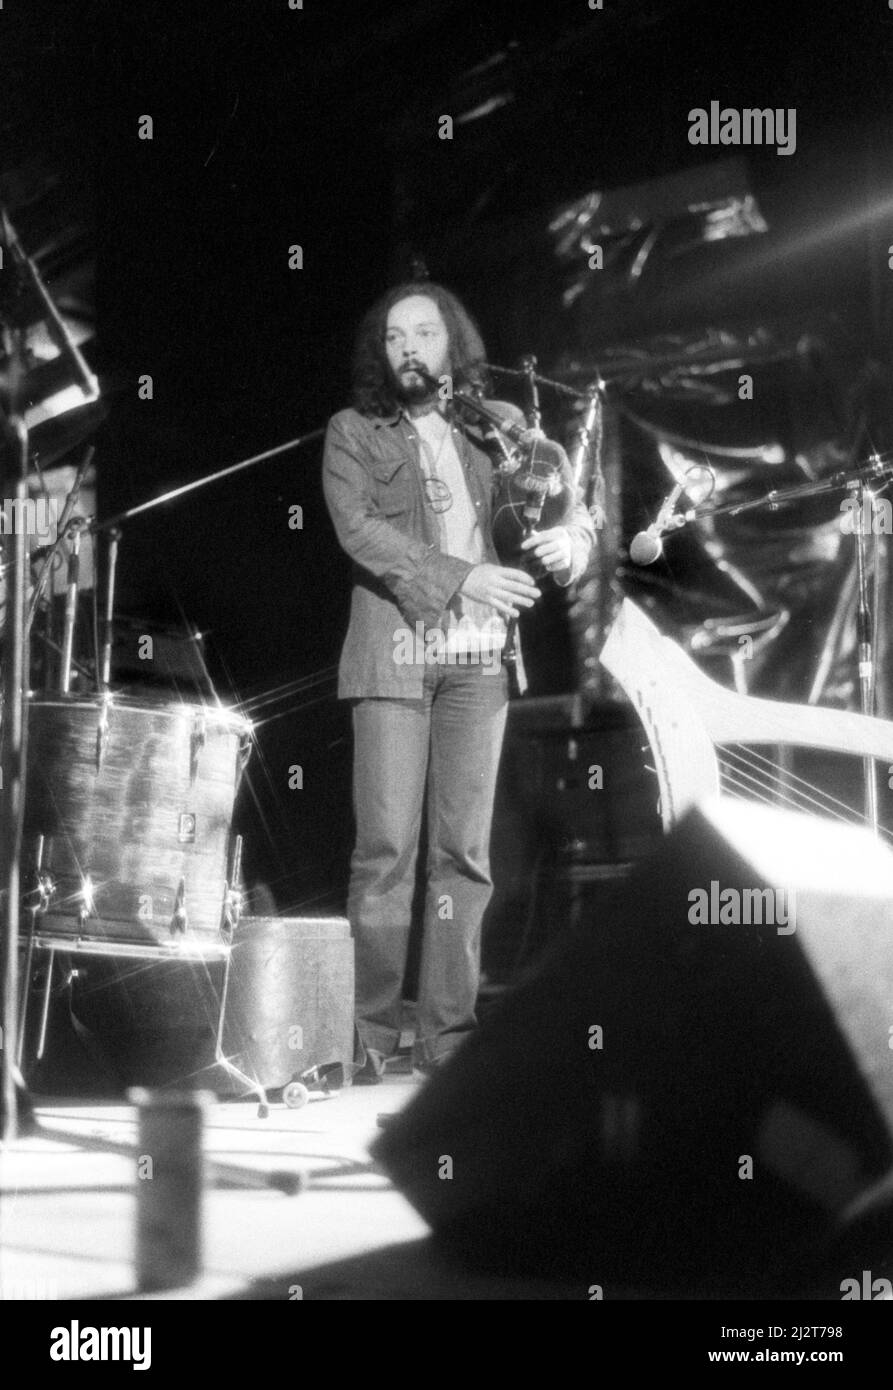 Der französische Musiker und Sänger Alan Stivell performt am 25. Juli 1976 beim July Wakes Folk Festival in Chorley, Lancashire, England. Stockfoto